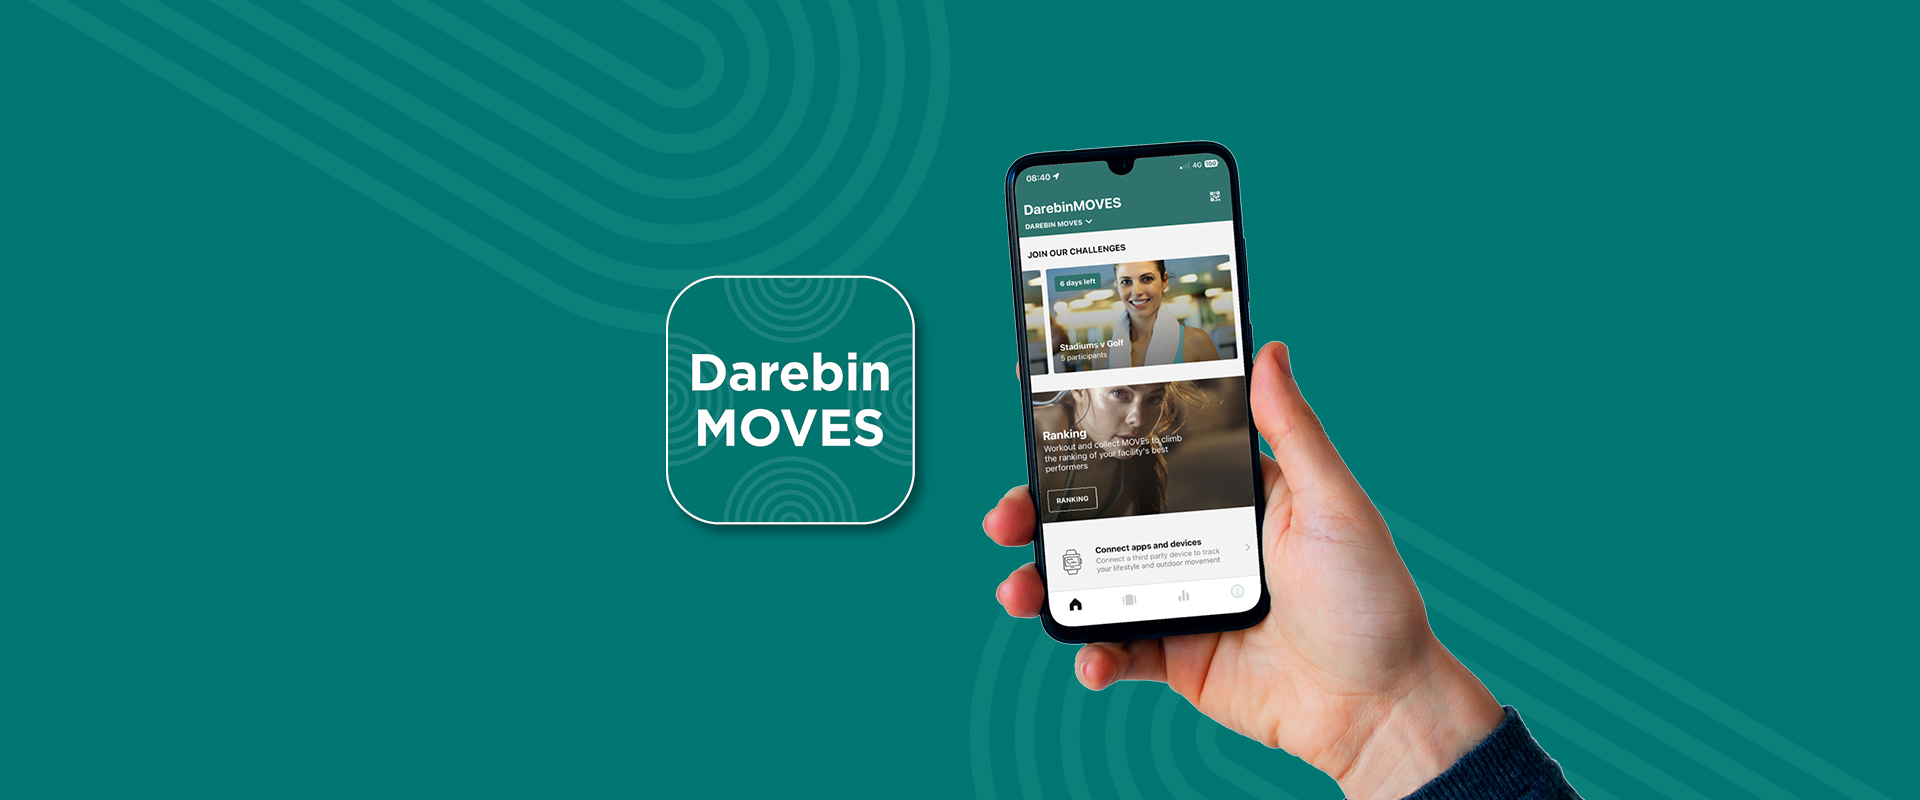 DarebinMOVES app